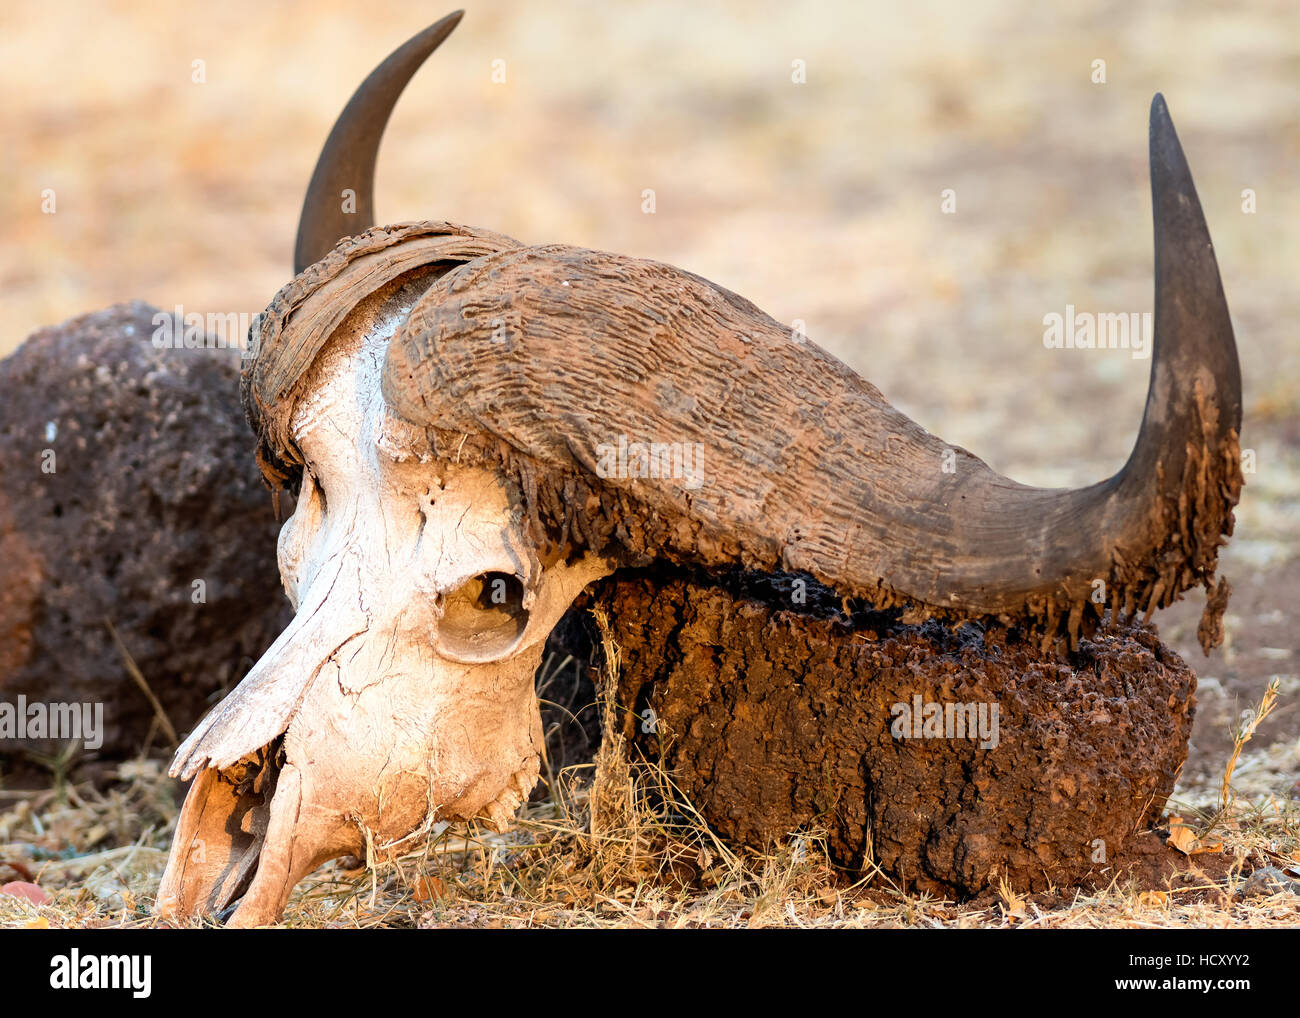 Cráneo de búfalo, el delta del Okavango, Botswana, África Foto de stock